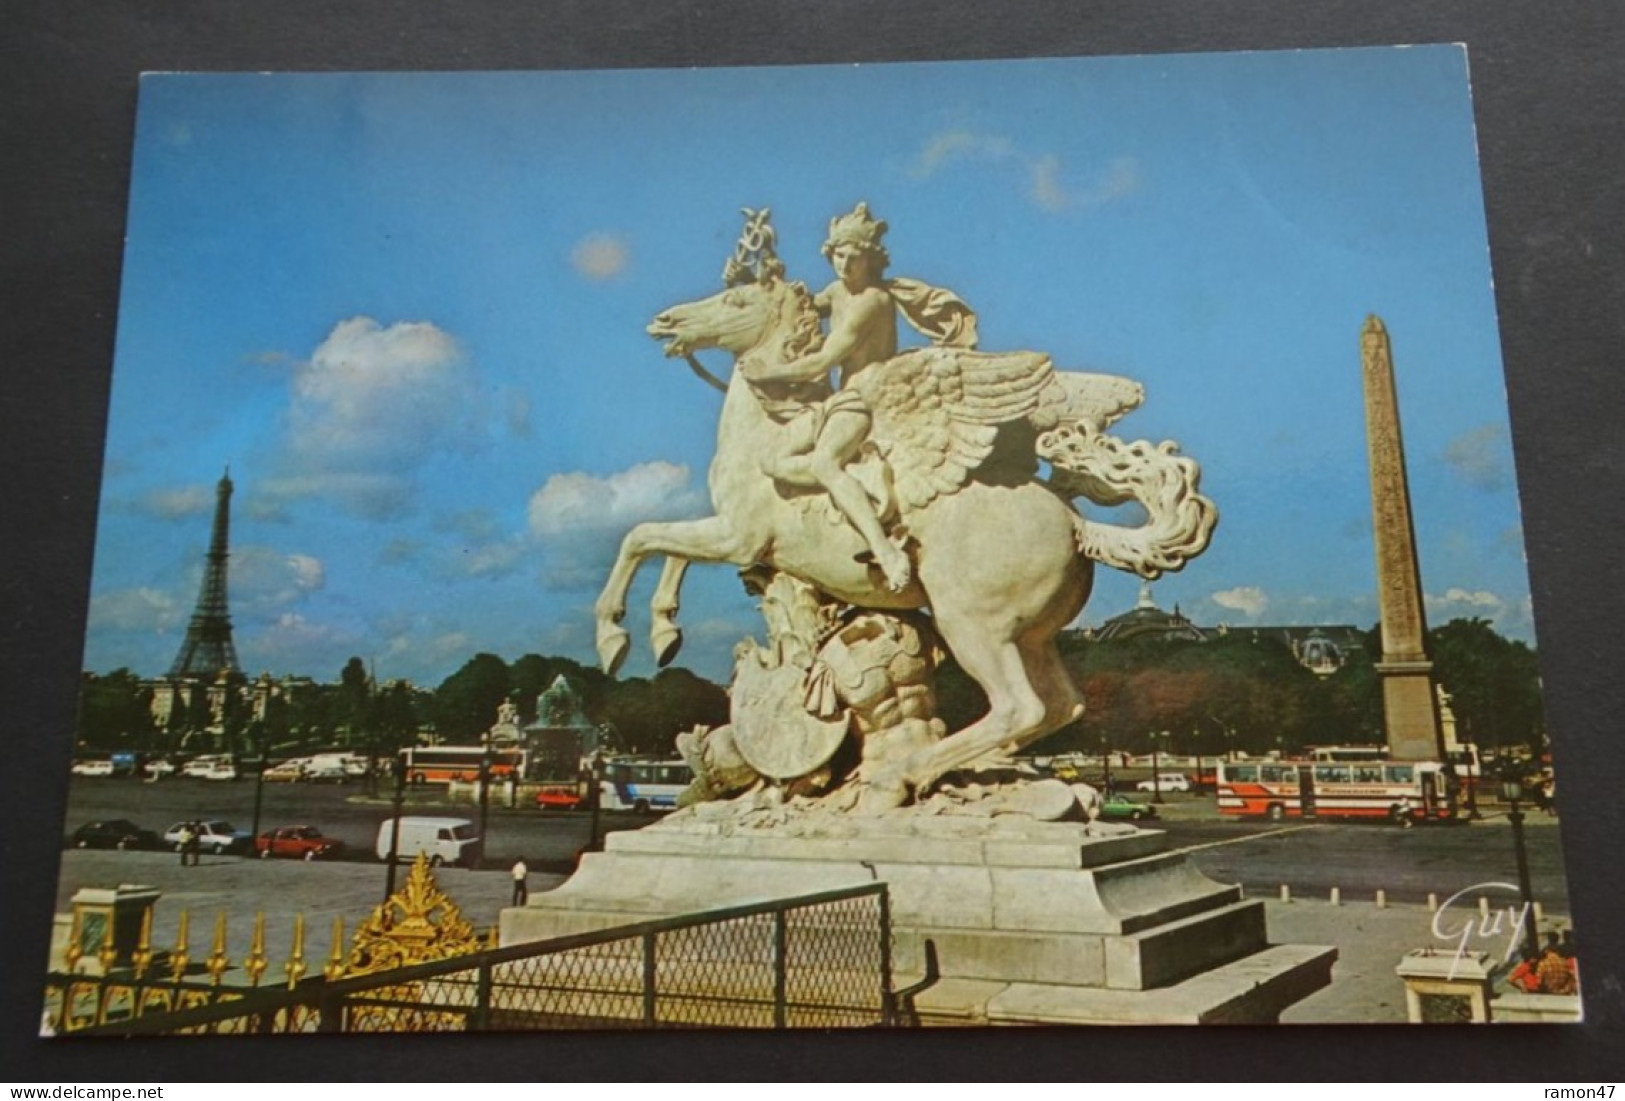 Paris - La Place De La Concorde - Editions "GUY", Paris - Squares